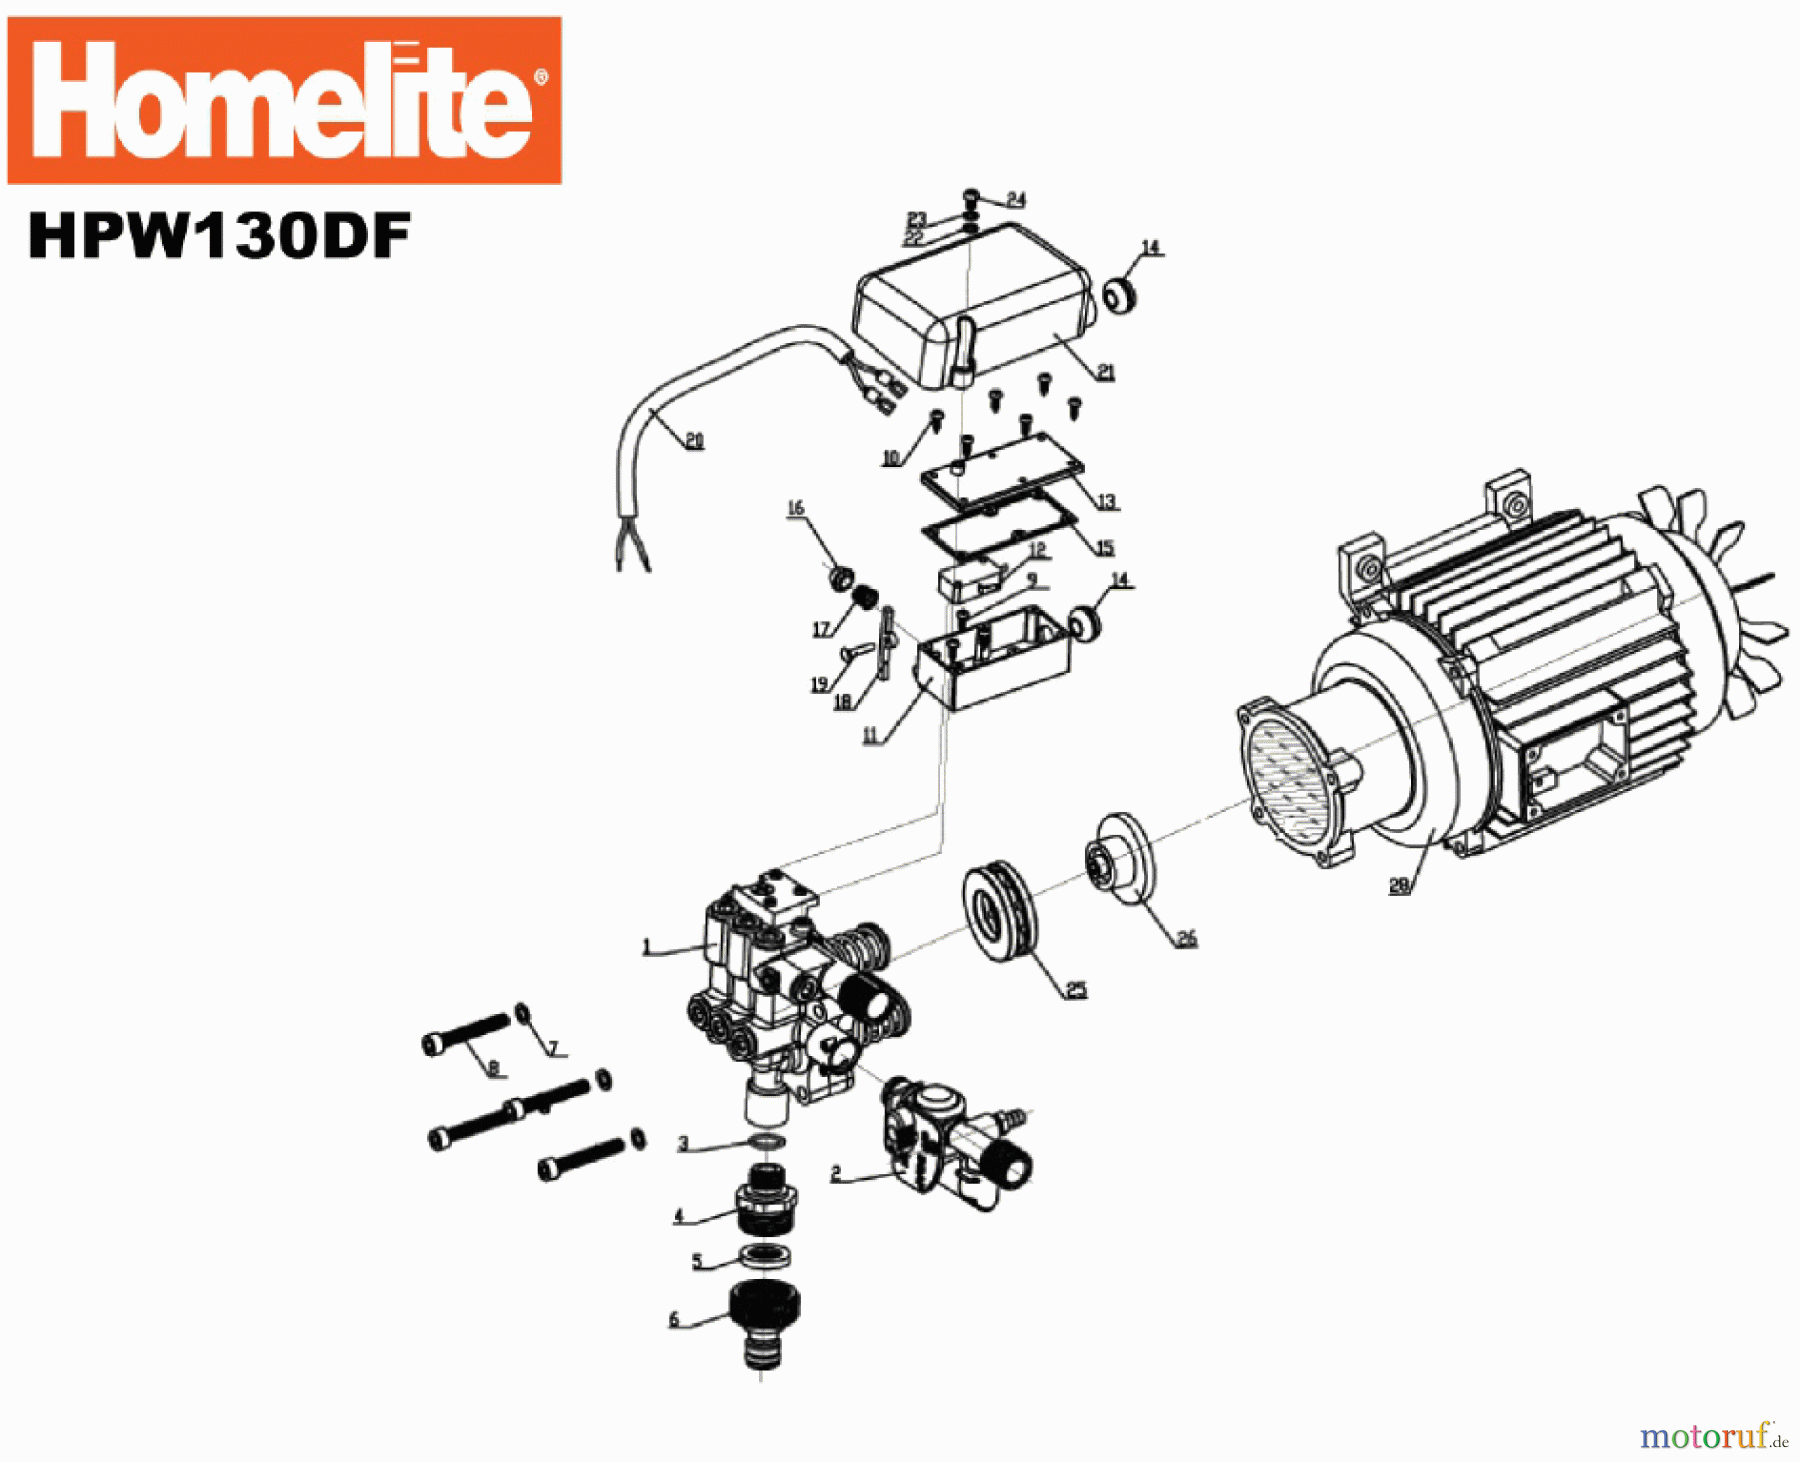  Homelite Hochdruckreiniger HPW130DF Seite 1